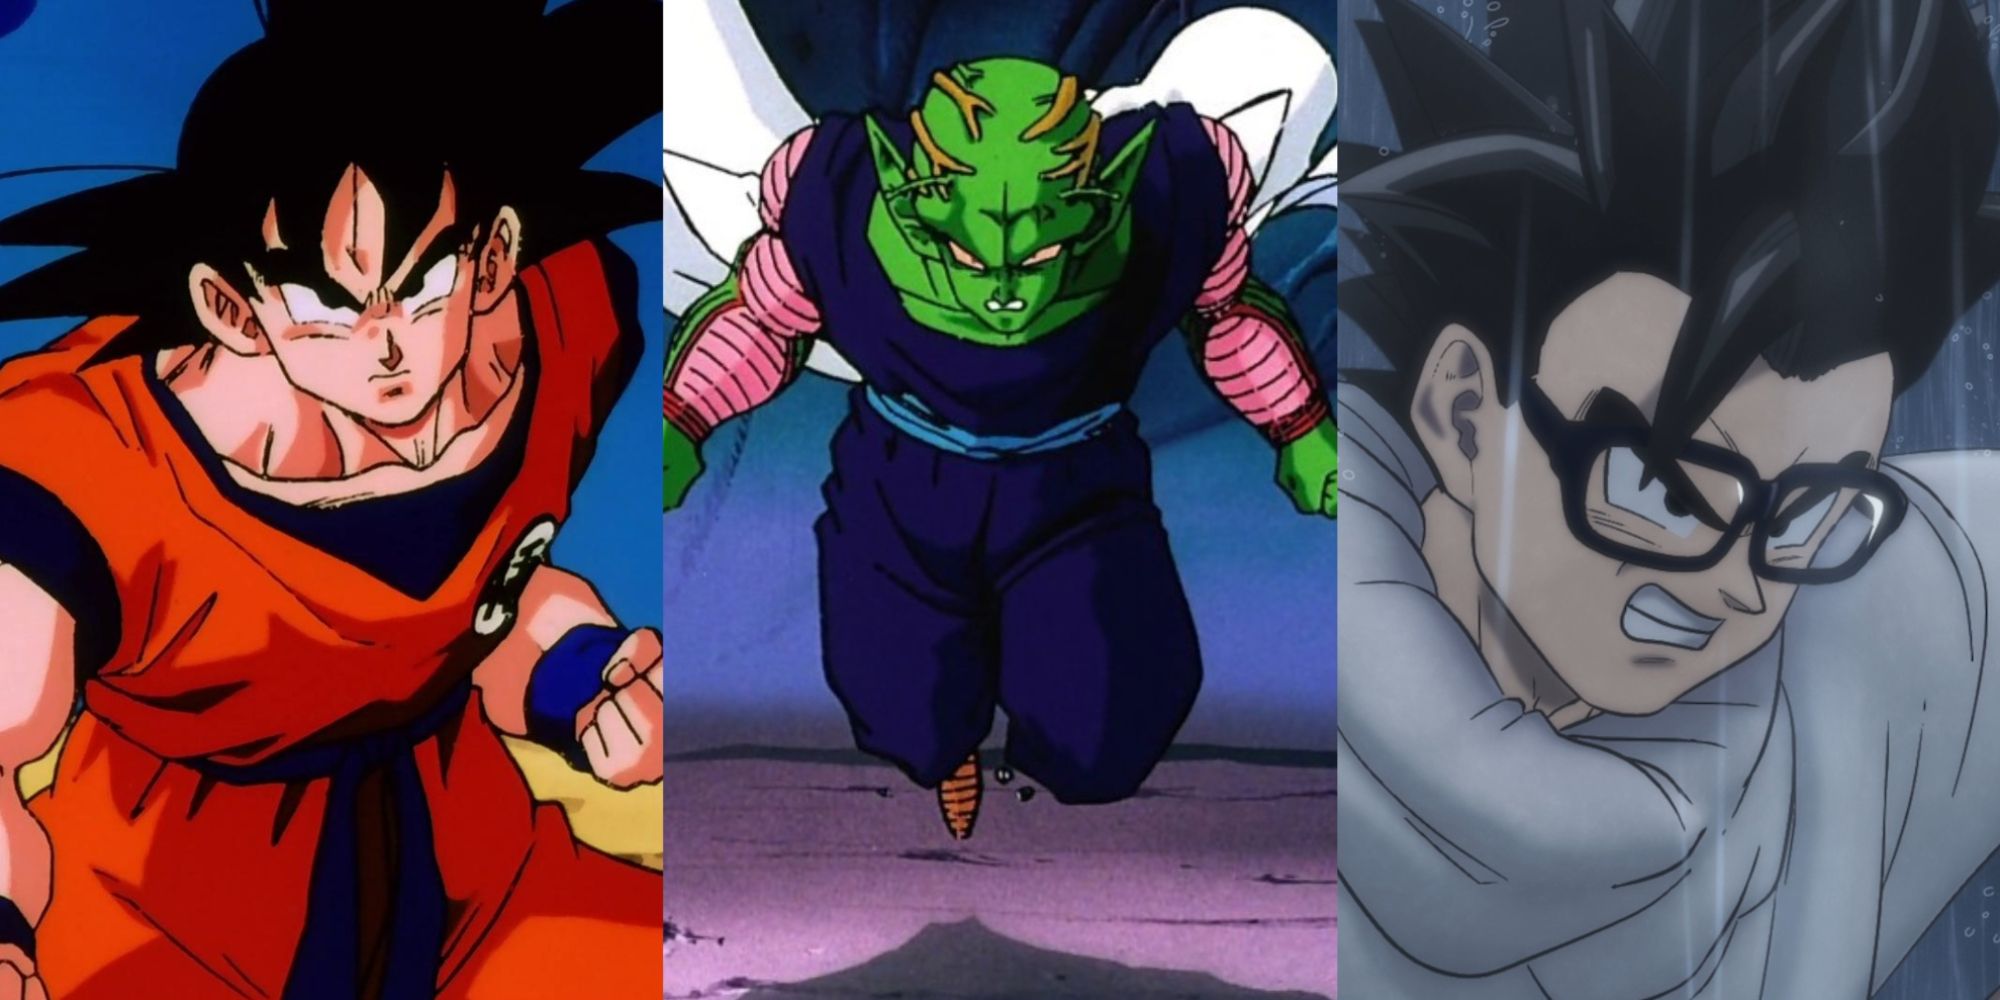 Goku vs Goku - Dragon Ball Z Anime vs Movies 